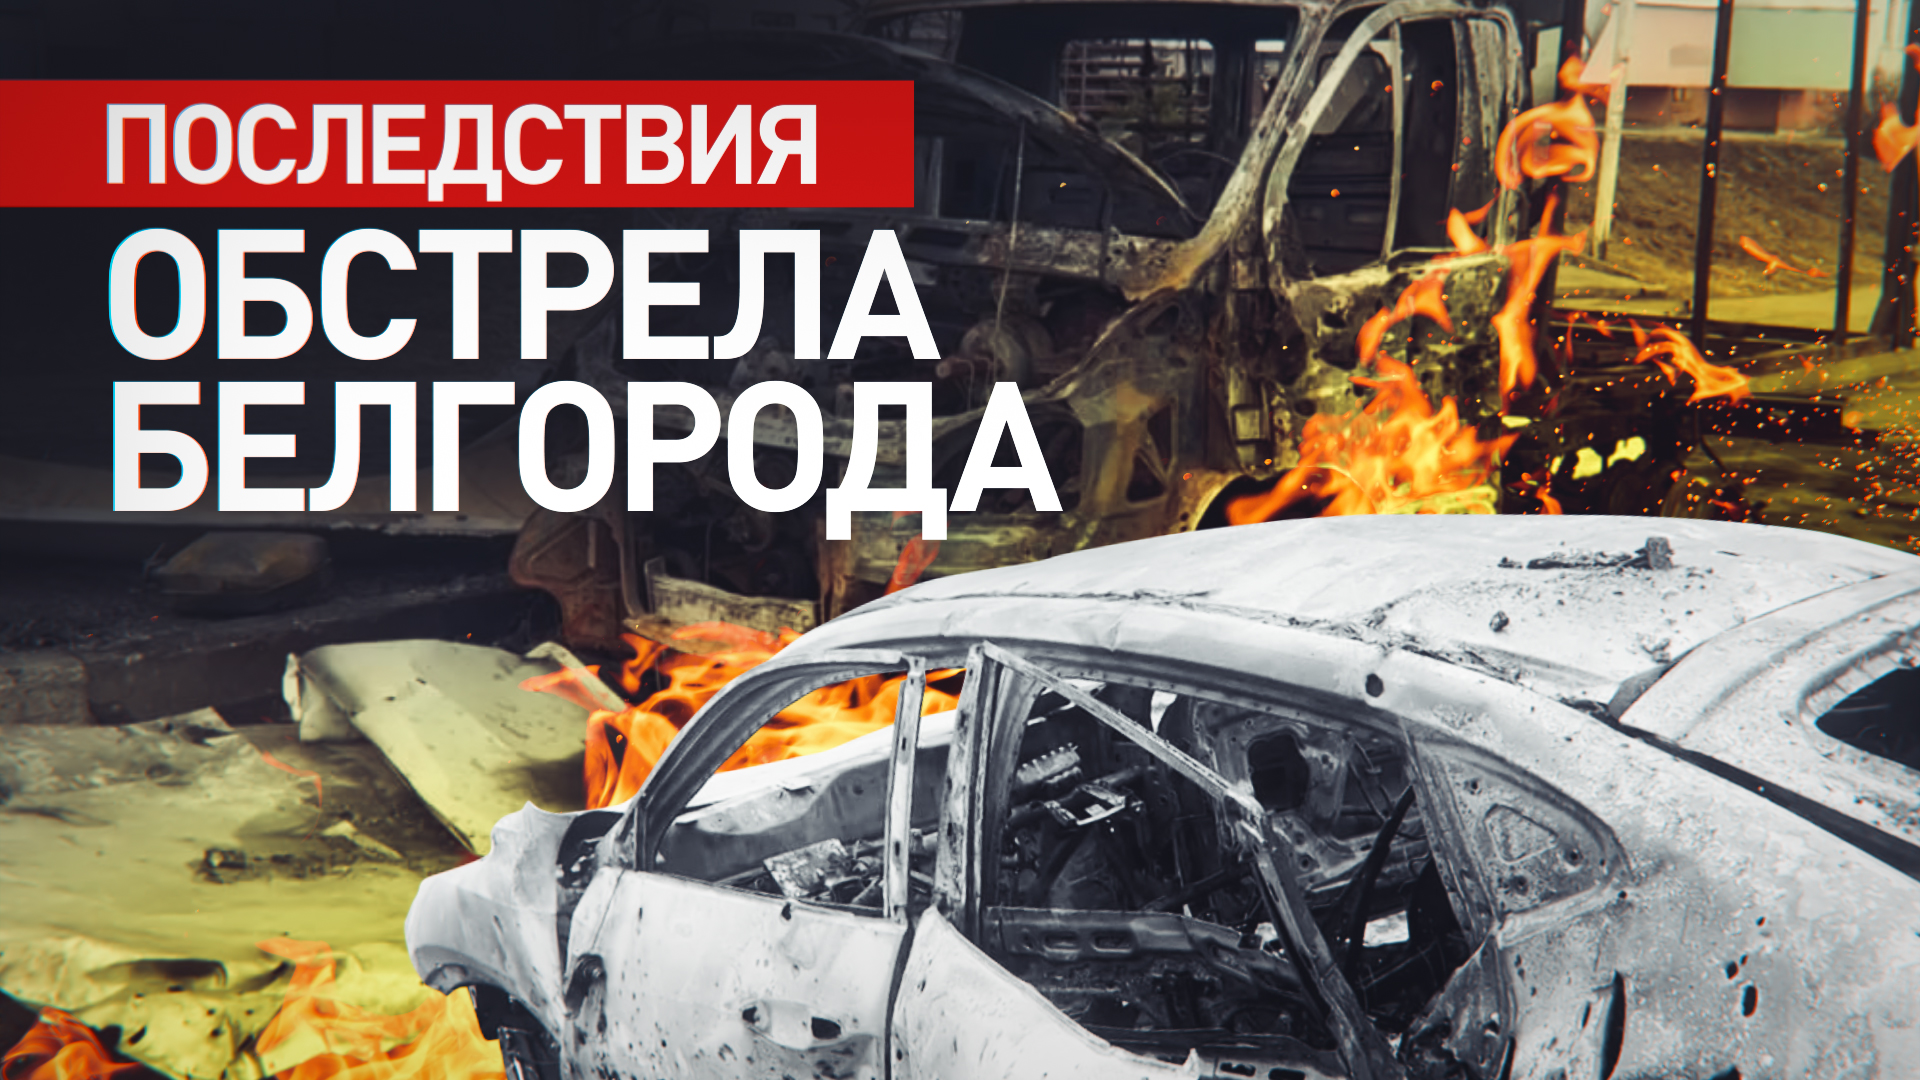 Два человека погибли в результате обстрела Белгорода со стороны ВСУ